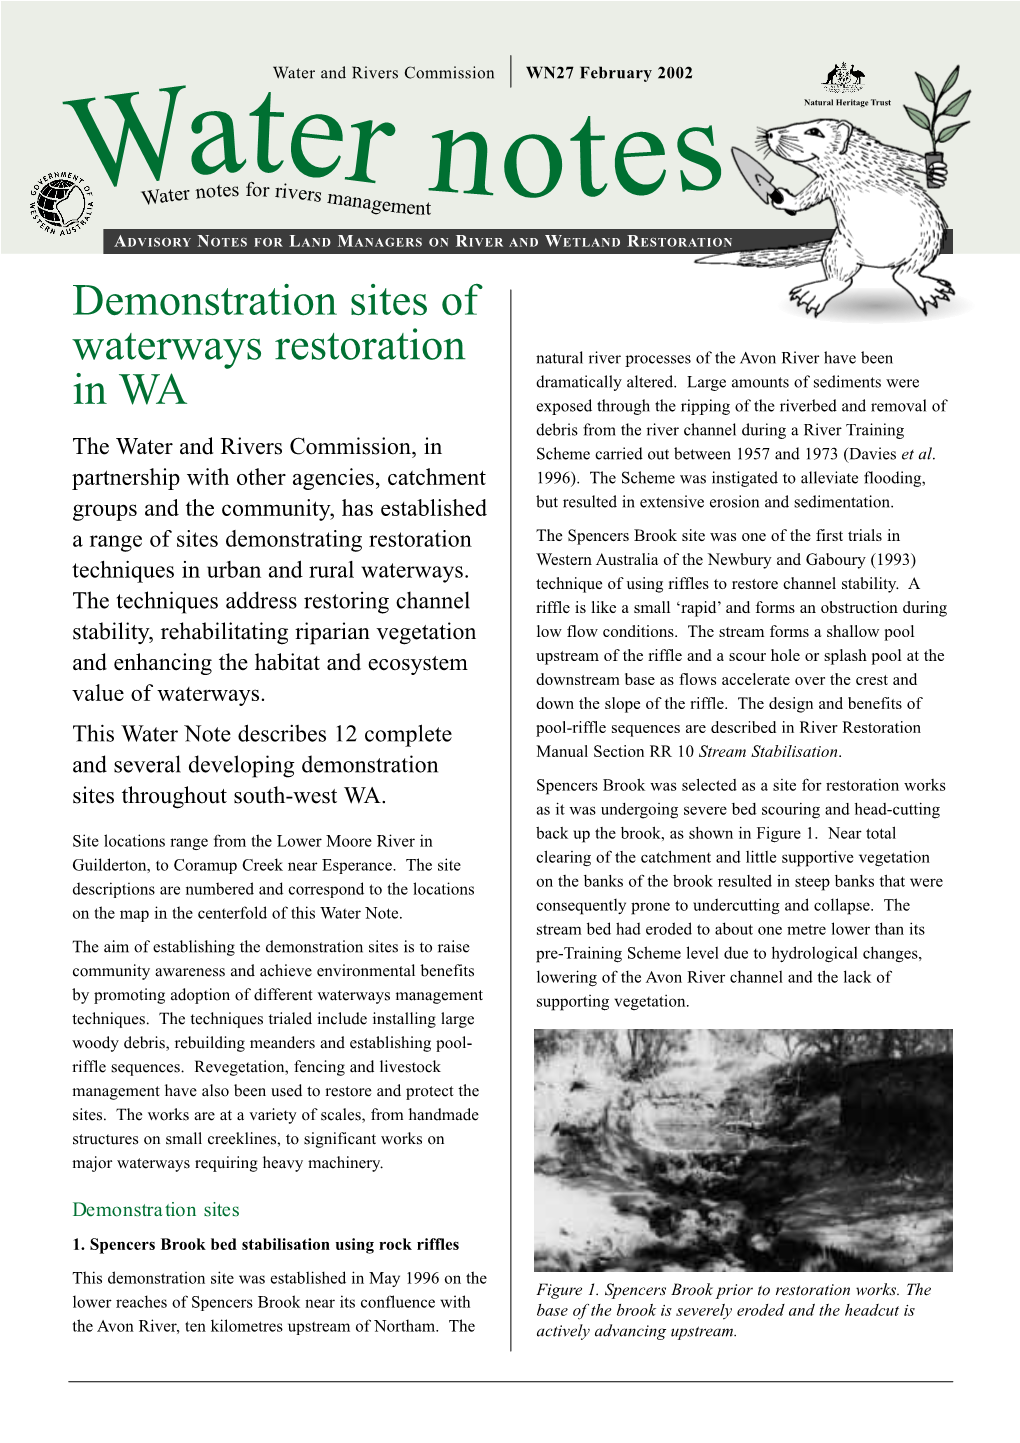 Demonstration Sites of Waterways Restoration In